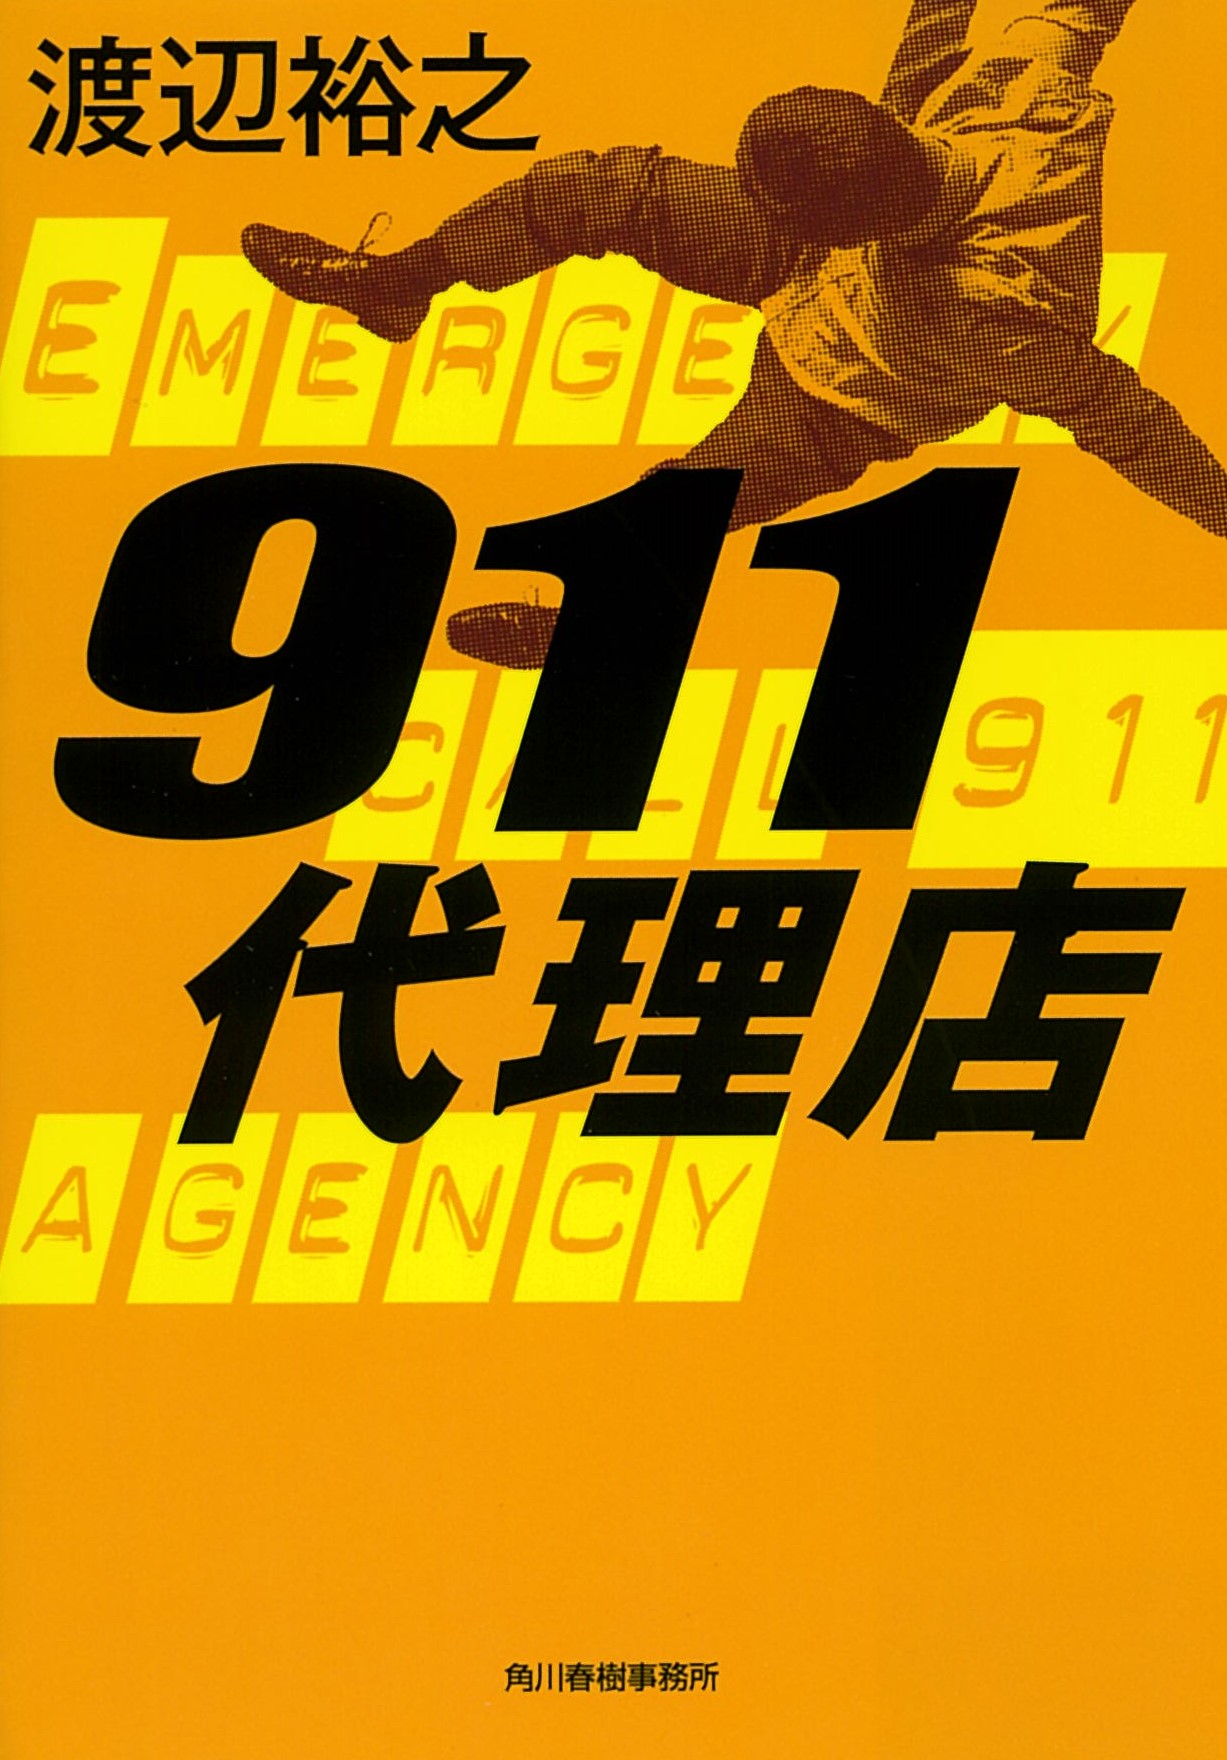 911代理店の商品画像